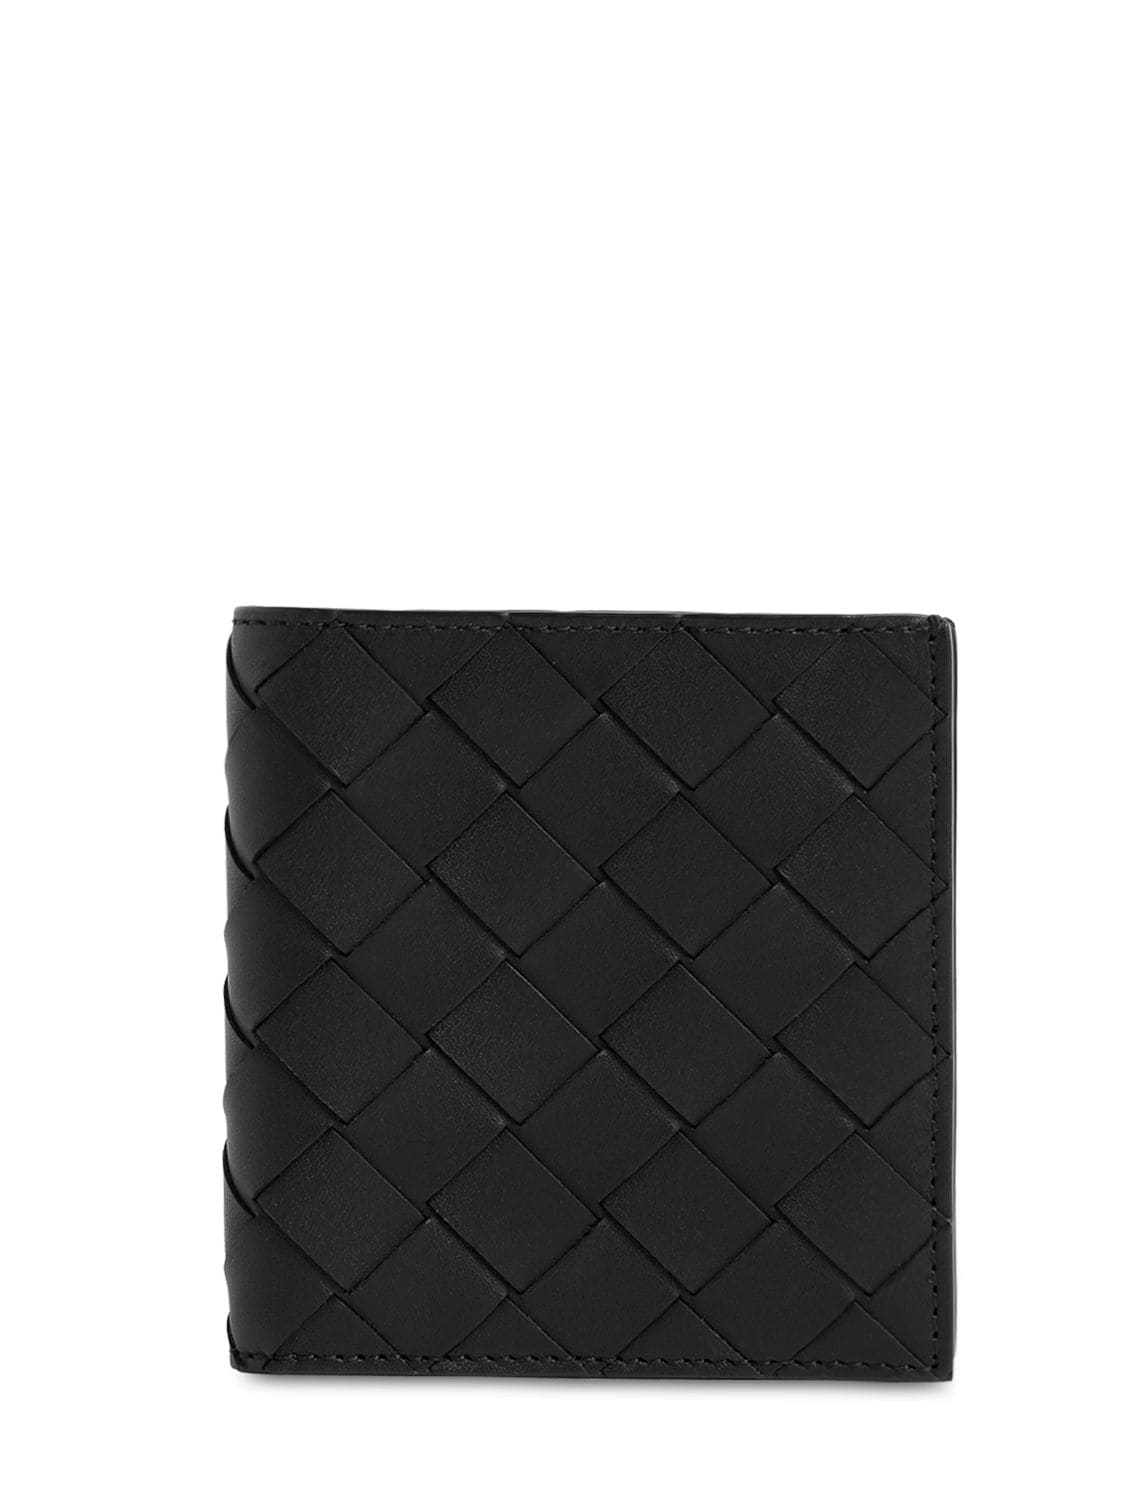 Bottega Veneta Intrecciato Leather Card Holder Wallet In Black